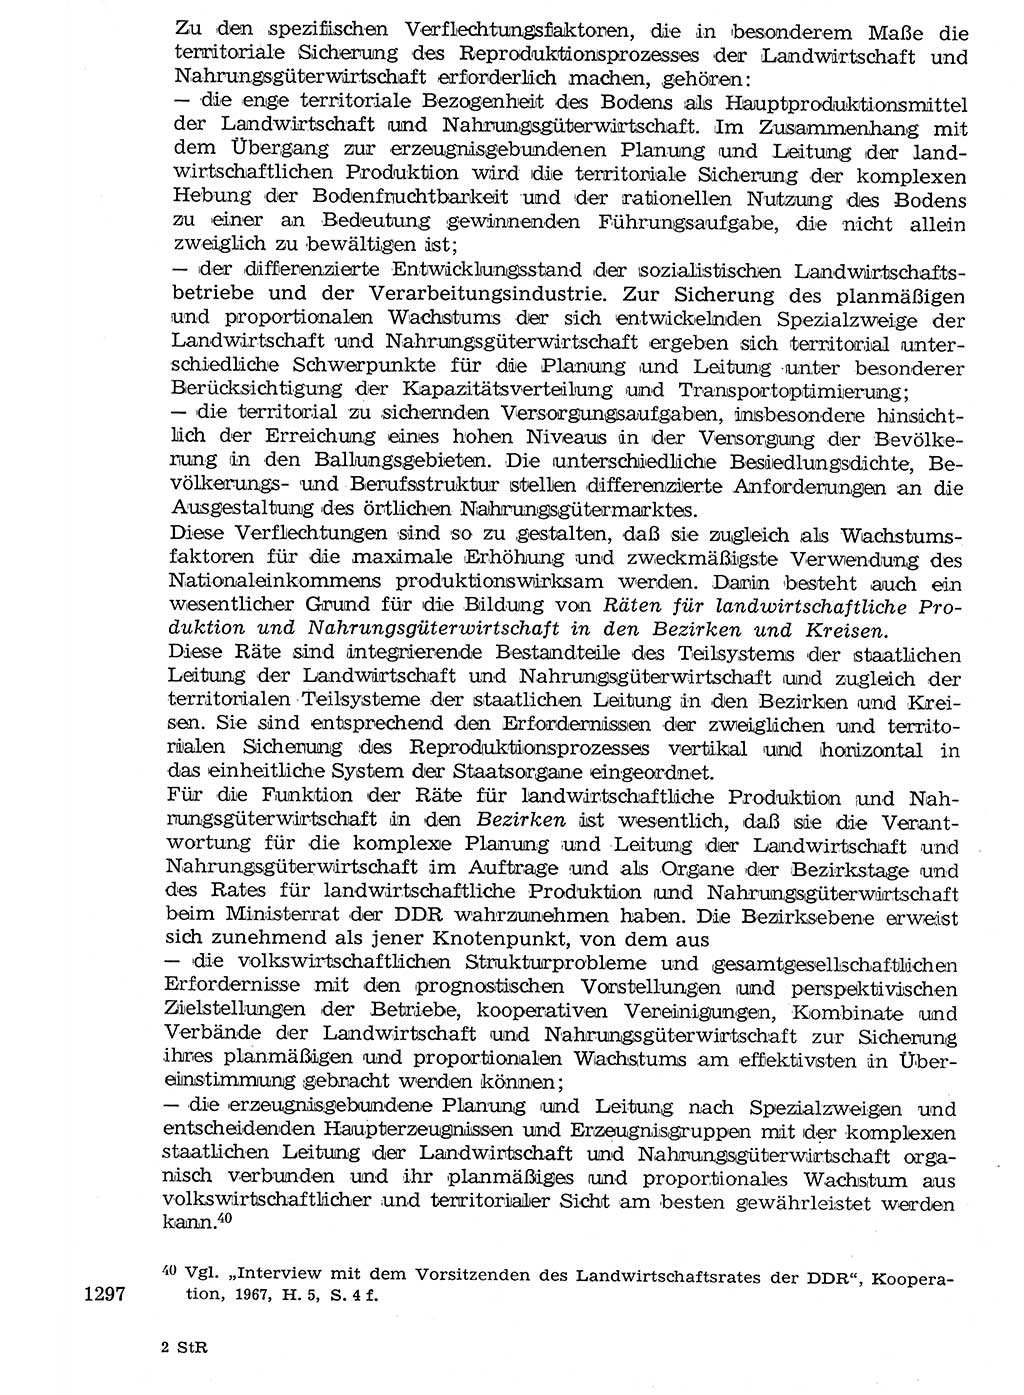 Staat und Recht (StuR), 17. Jahrgang [Deutsche Demokratische Republik (DDR)] 1968, Seite 1297 (StuR DDR 1968, S. 1297)